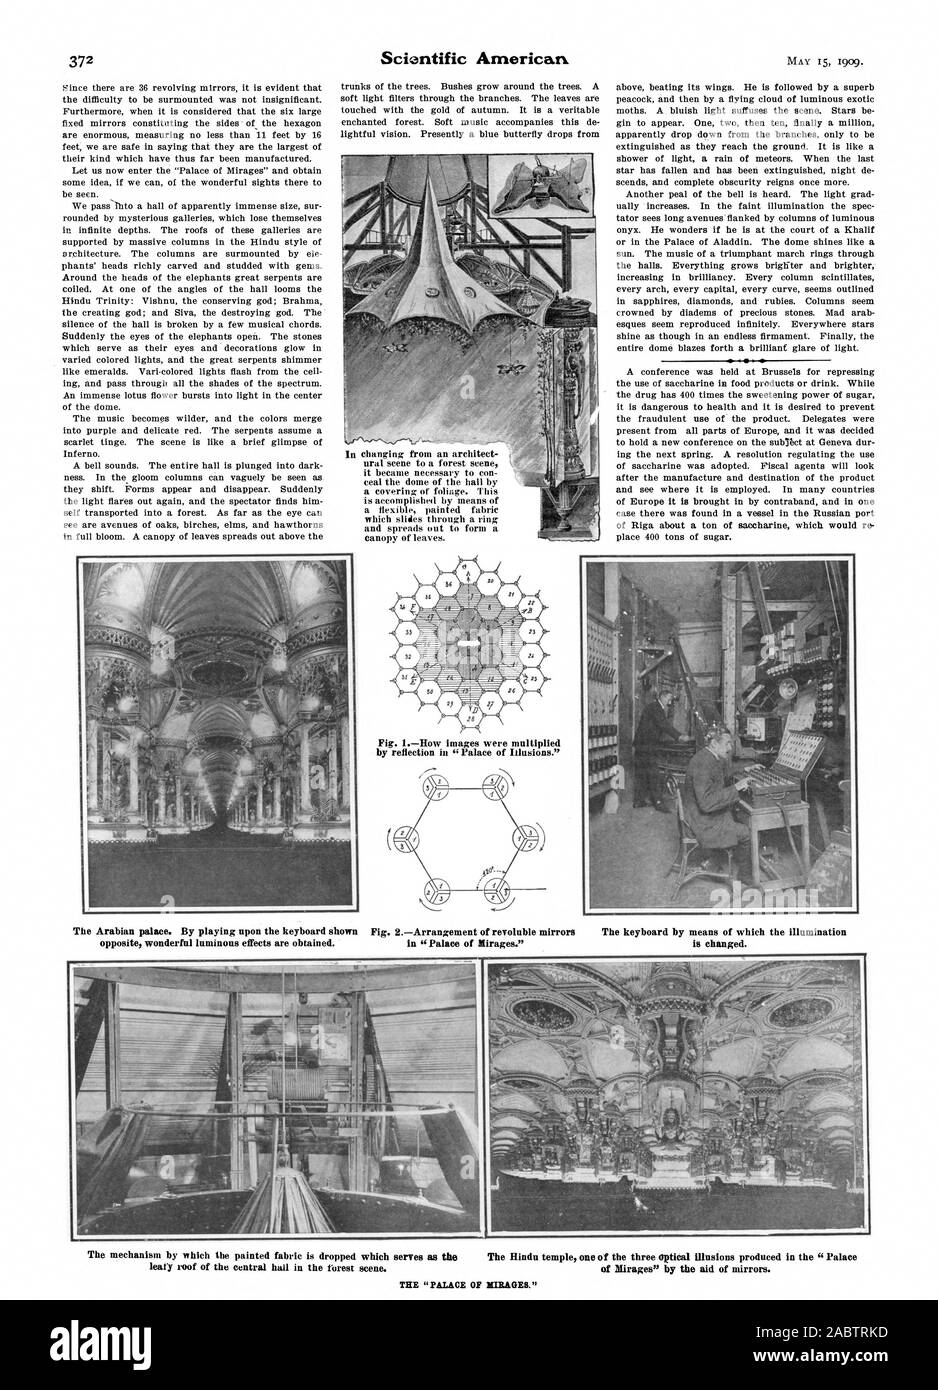 Fig. 1La façon dont les images ont été multipliées par la réflexion dans 'Palais des illusions." Le palais. En jouant sur le clavier illustré Fig. Arrangement d'revoluble 2 reflète le clavier par l'intermédiaire de laquelle l'éclairage des Mirages' par l'aide de miroirs. toit verdoyant du hall central dans la forêt. scène, Scientific American, -1909-05-15 Banque D'Images